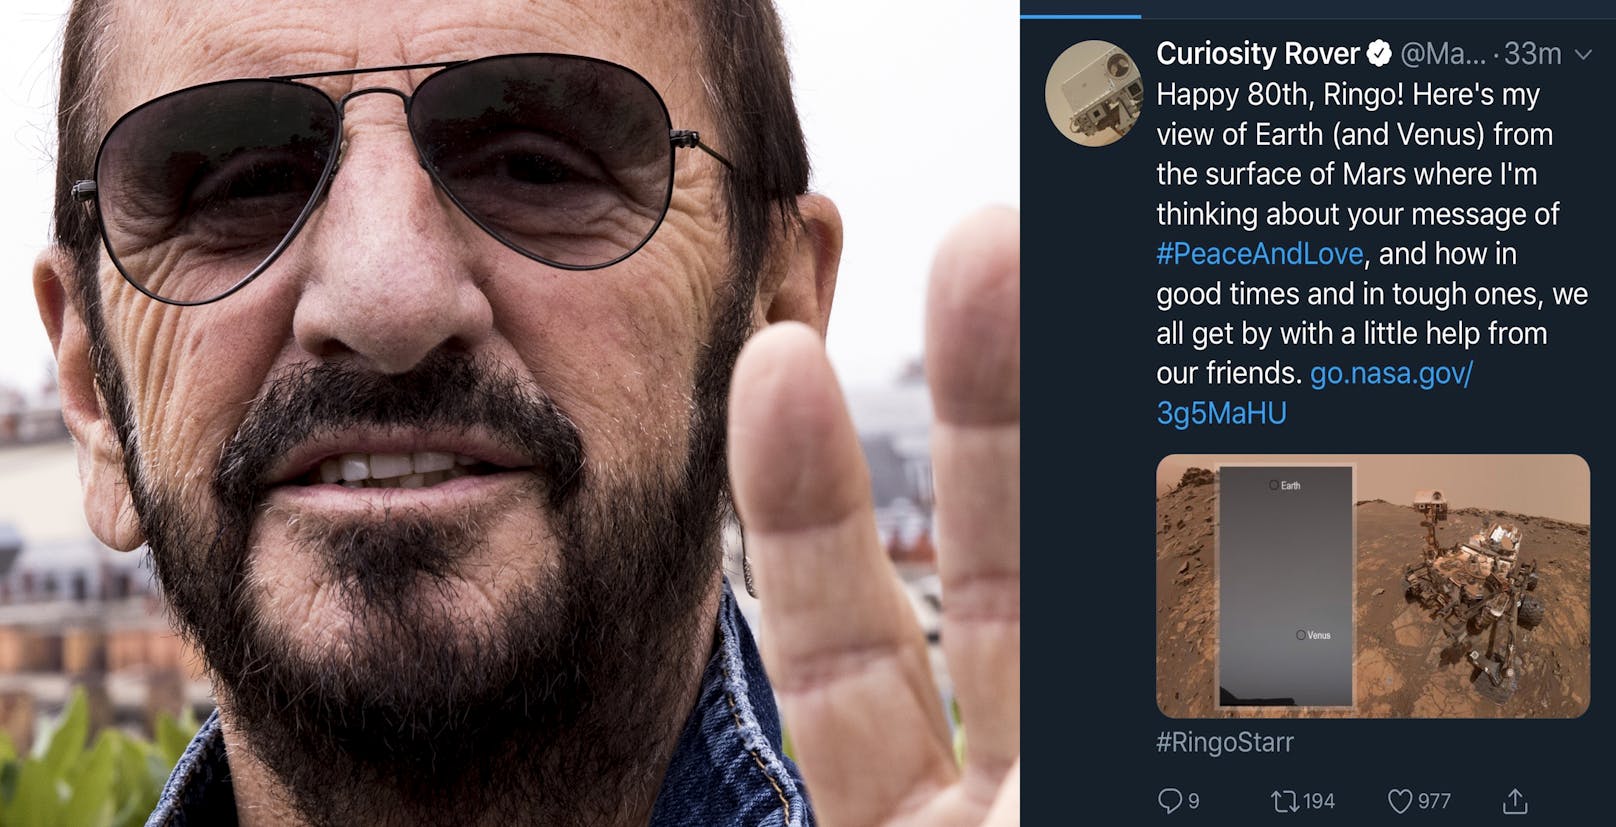 Spacige Gratulation für Ringo Starr